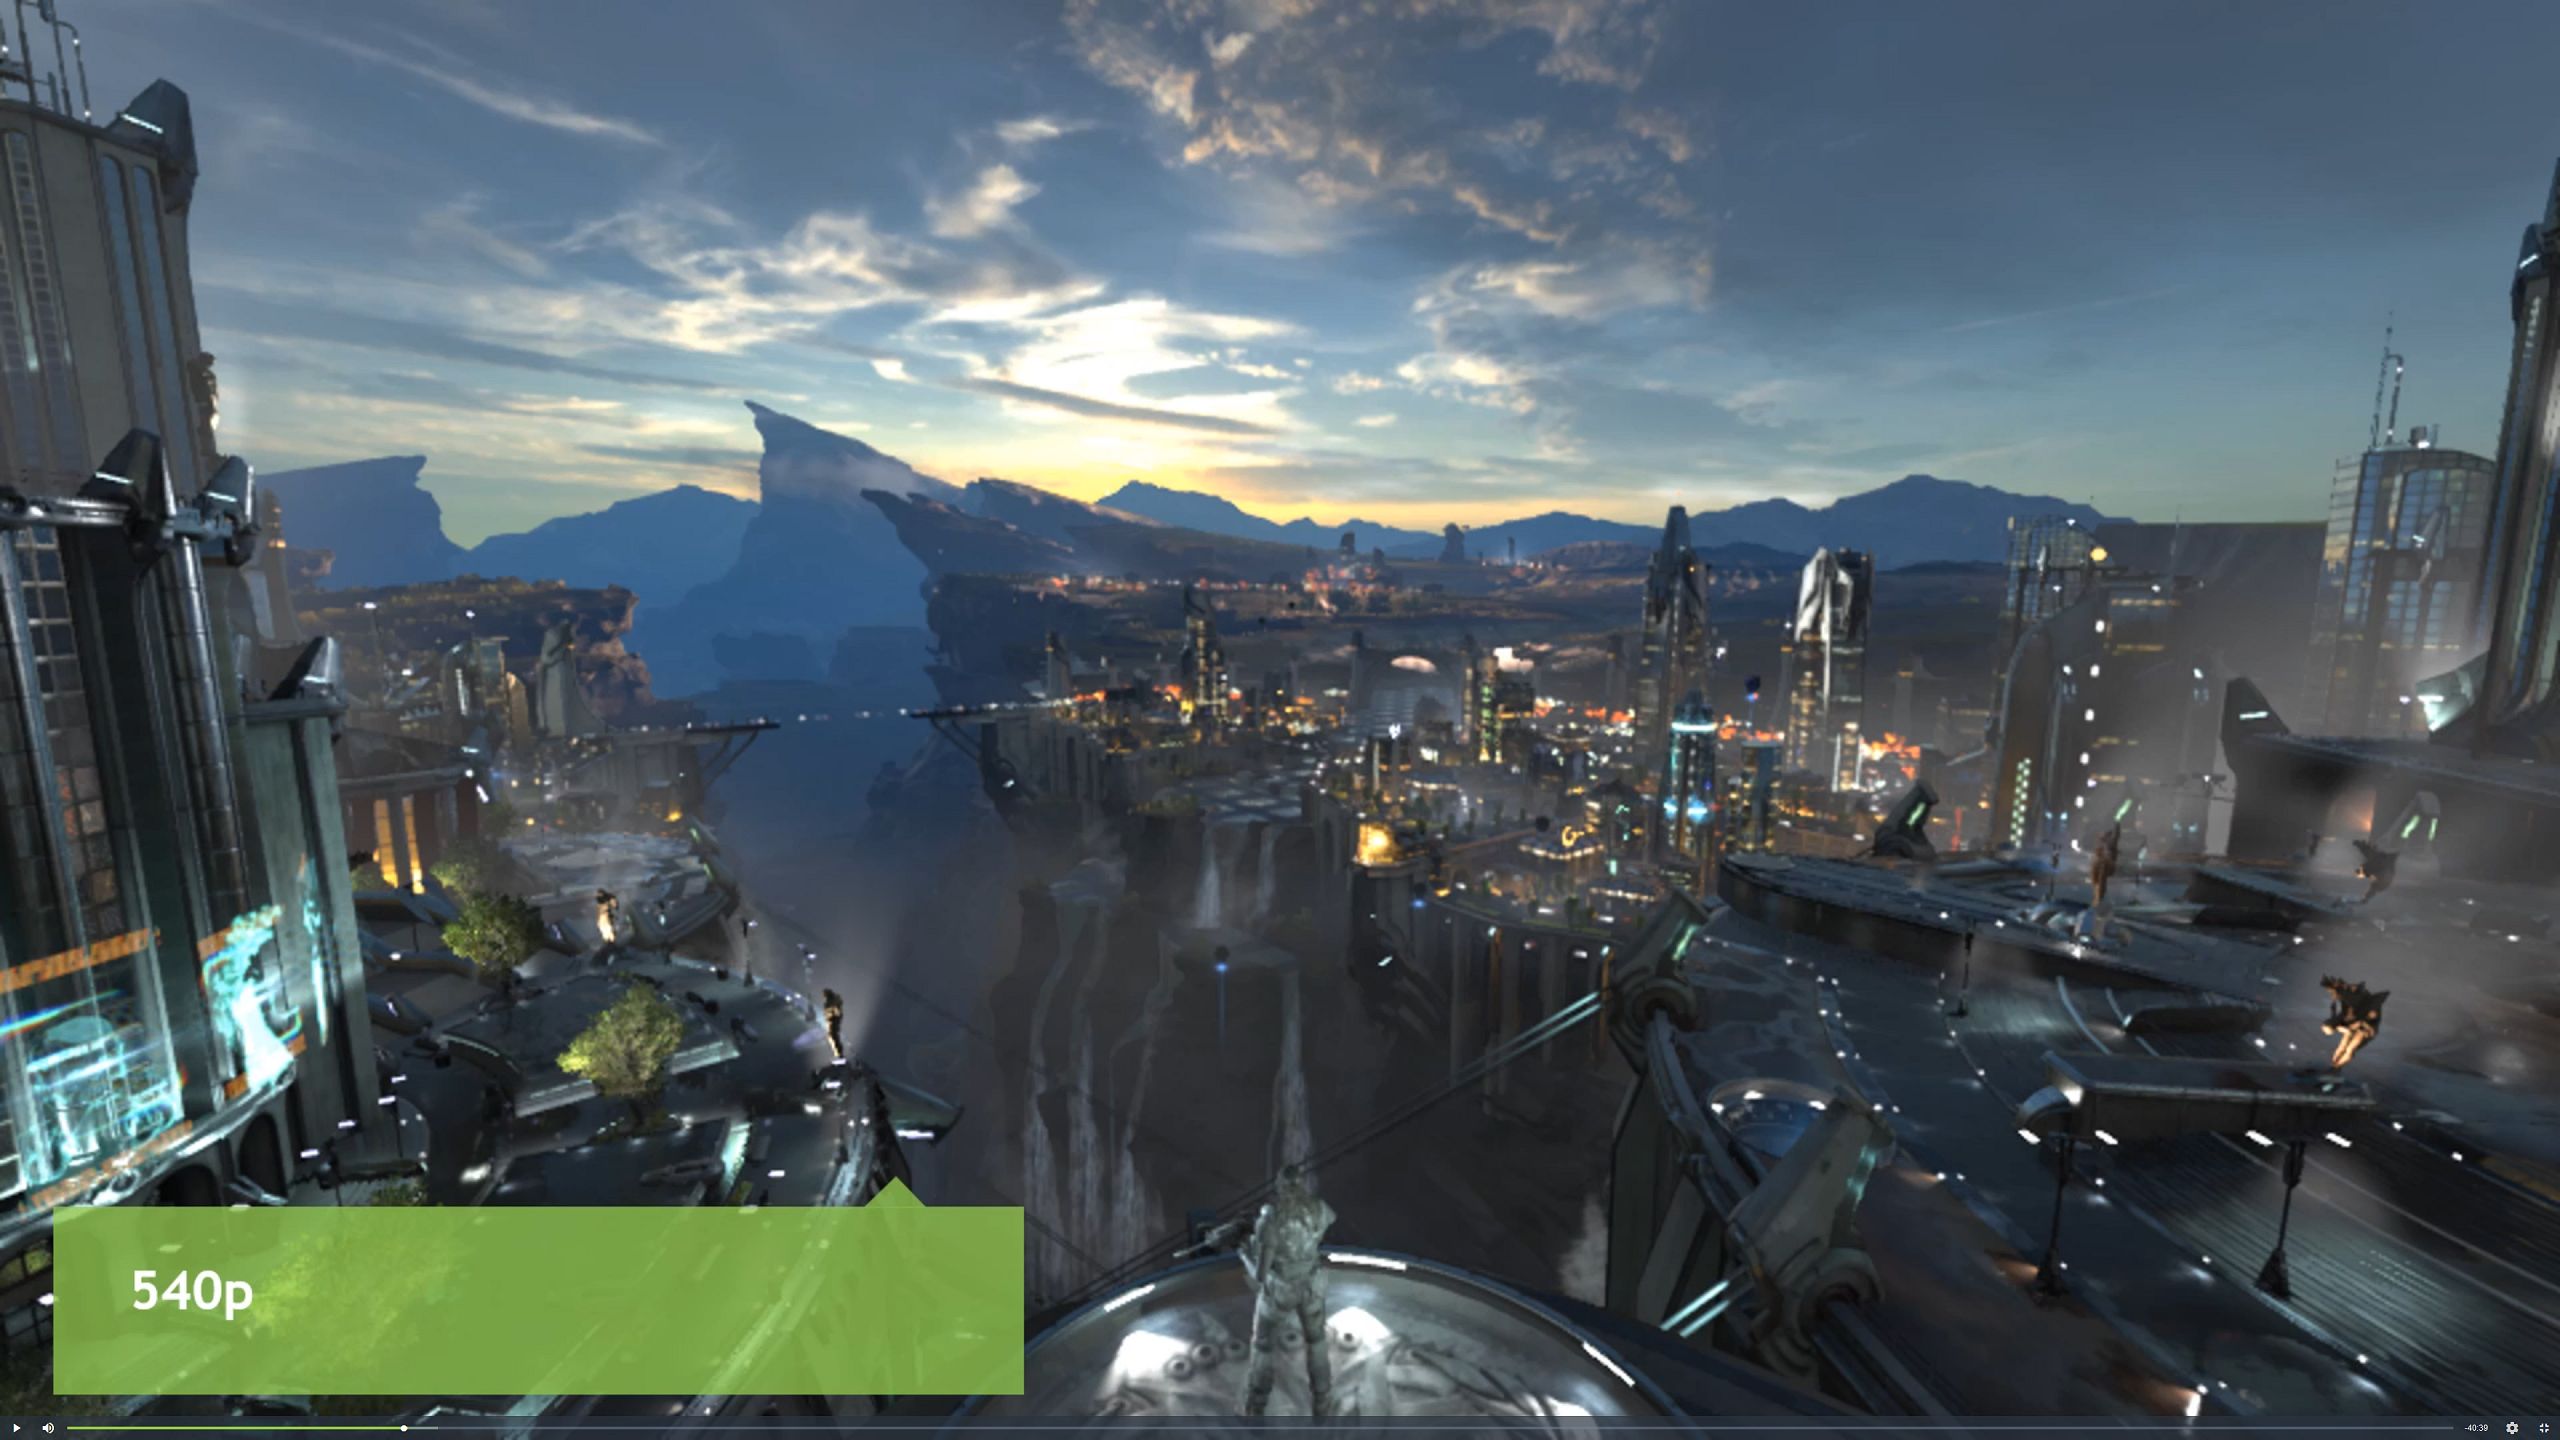 Cities Skylines 2 just got an NVIDIA DLSS 2 Mod